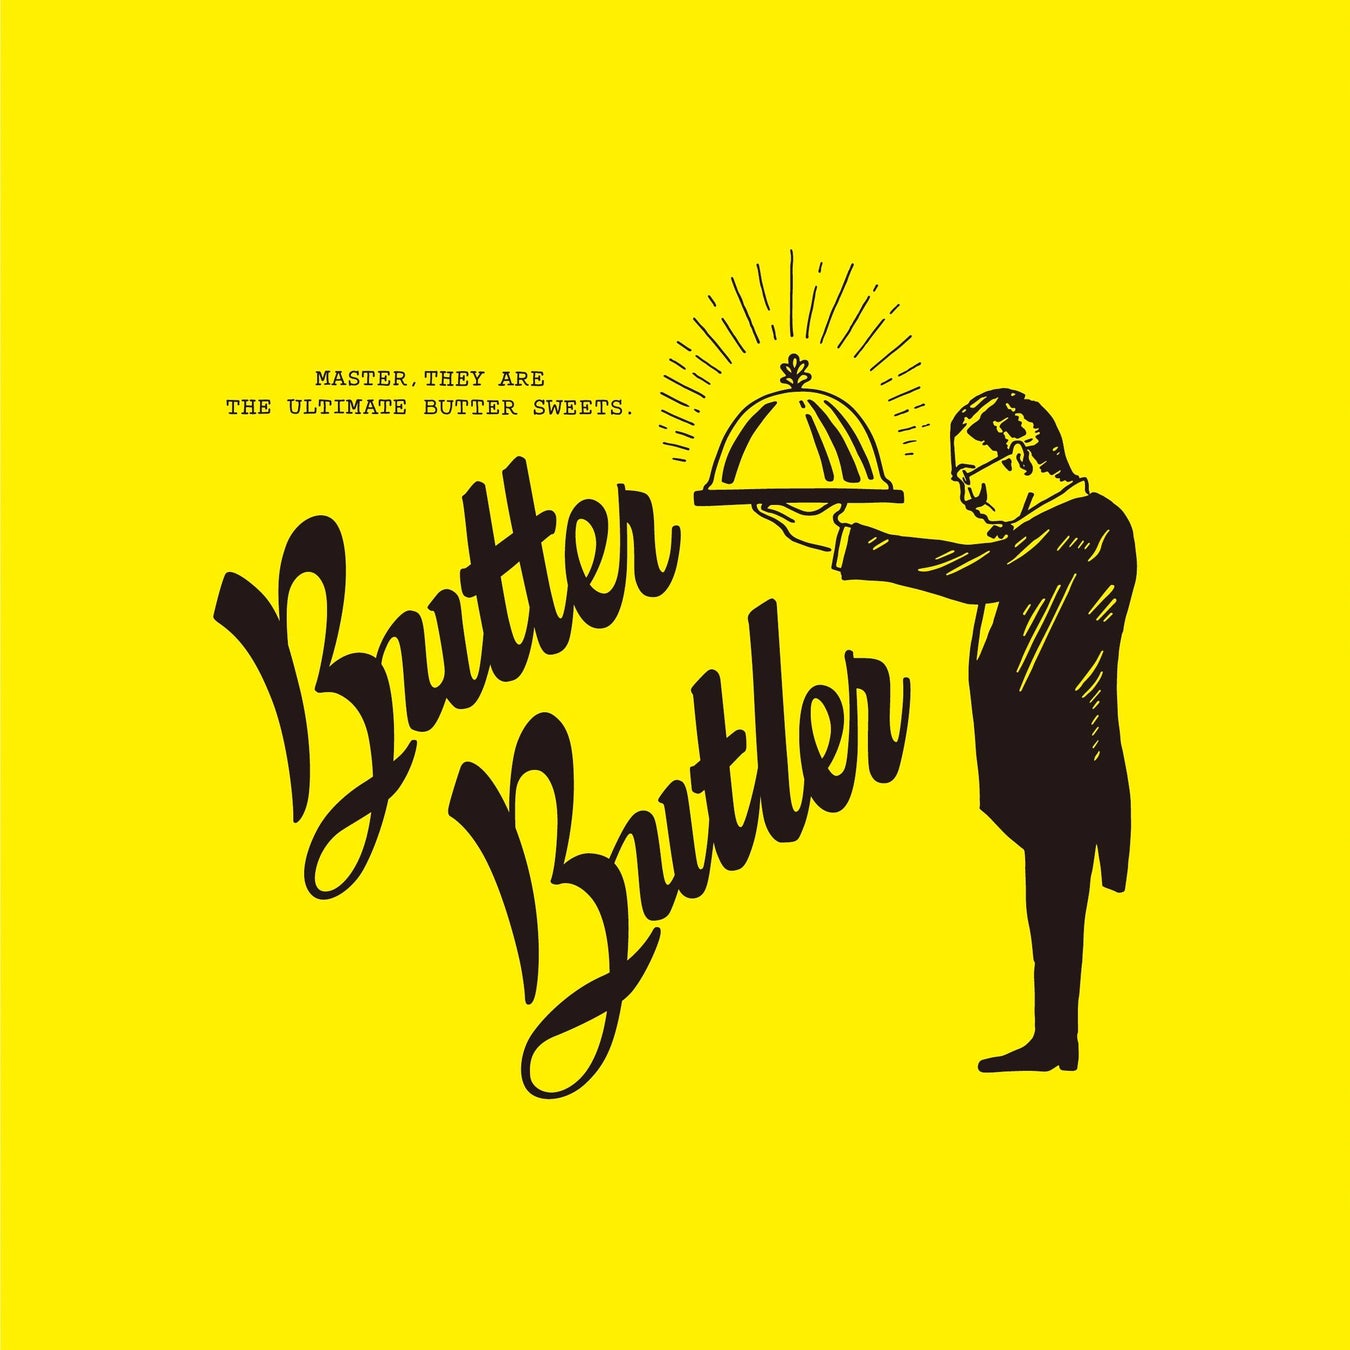 バターが主役のスイーツブランド『Butter Butler(バターバトラー)』が1年ぶりに大丸神戸店に期間限定出店いたします!